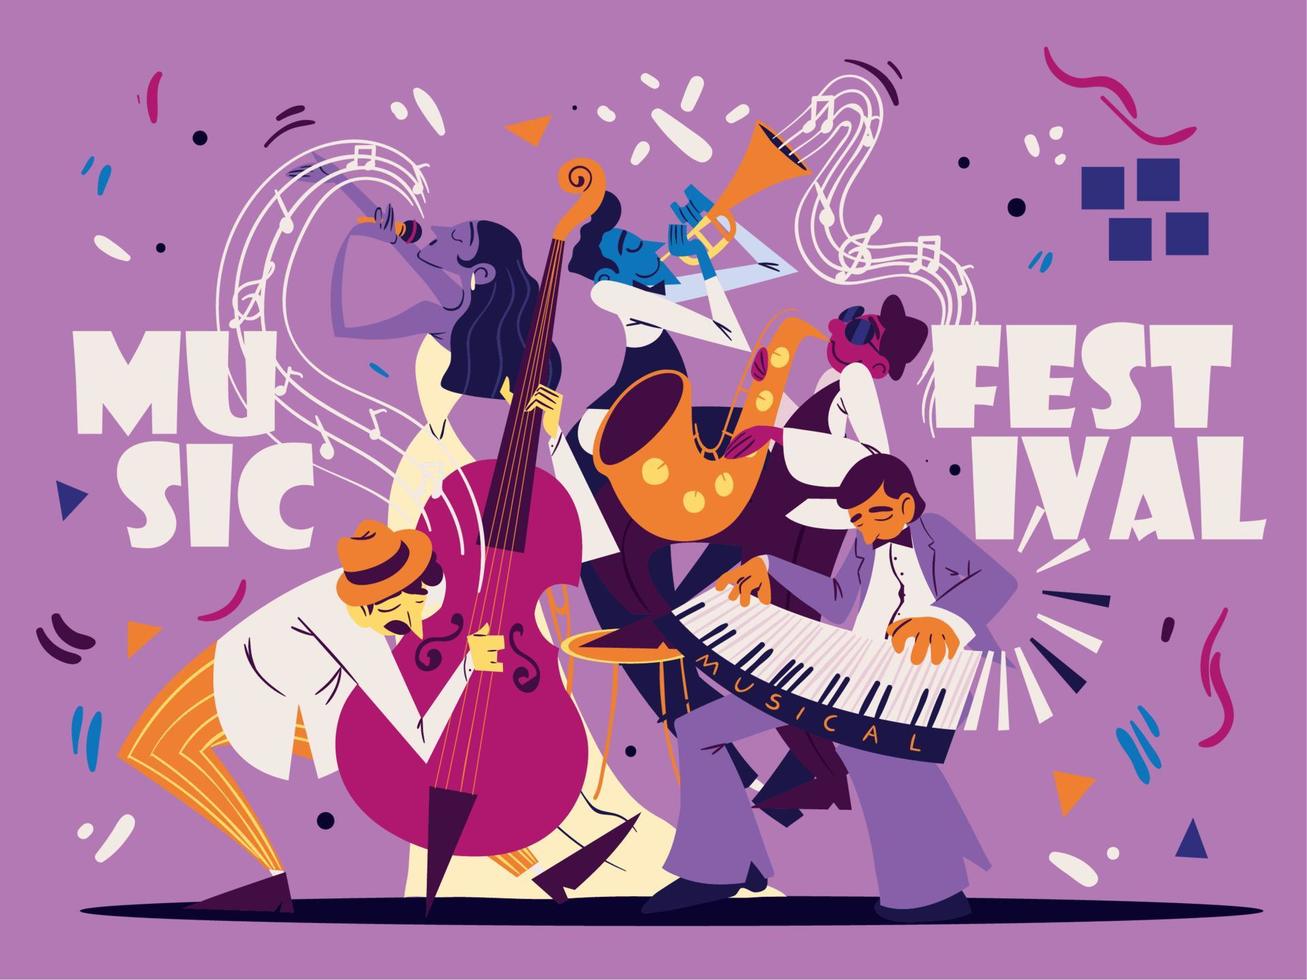 cartel del festival de musica y musicos vector